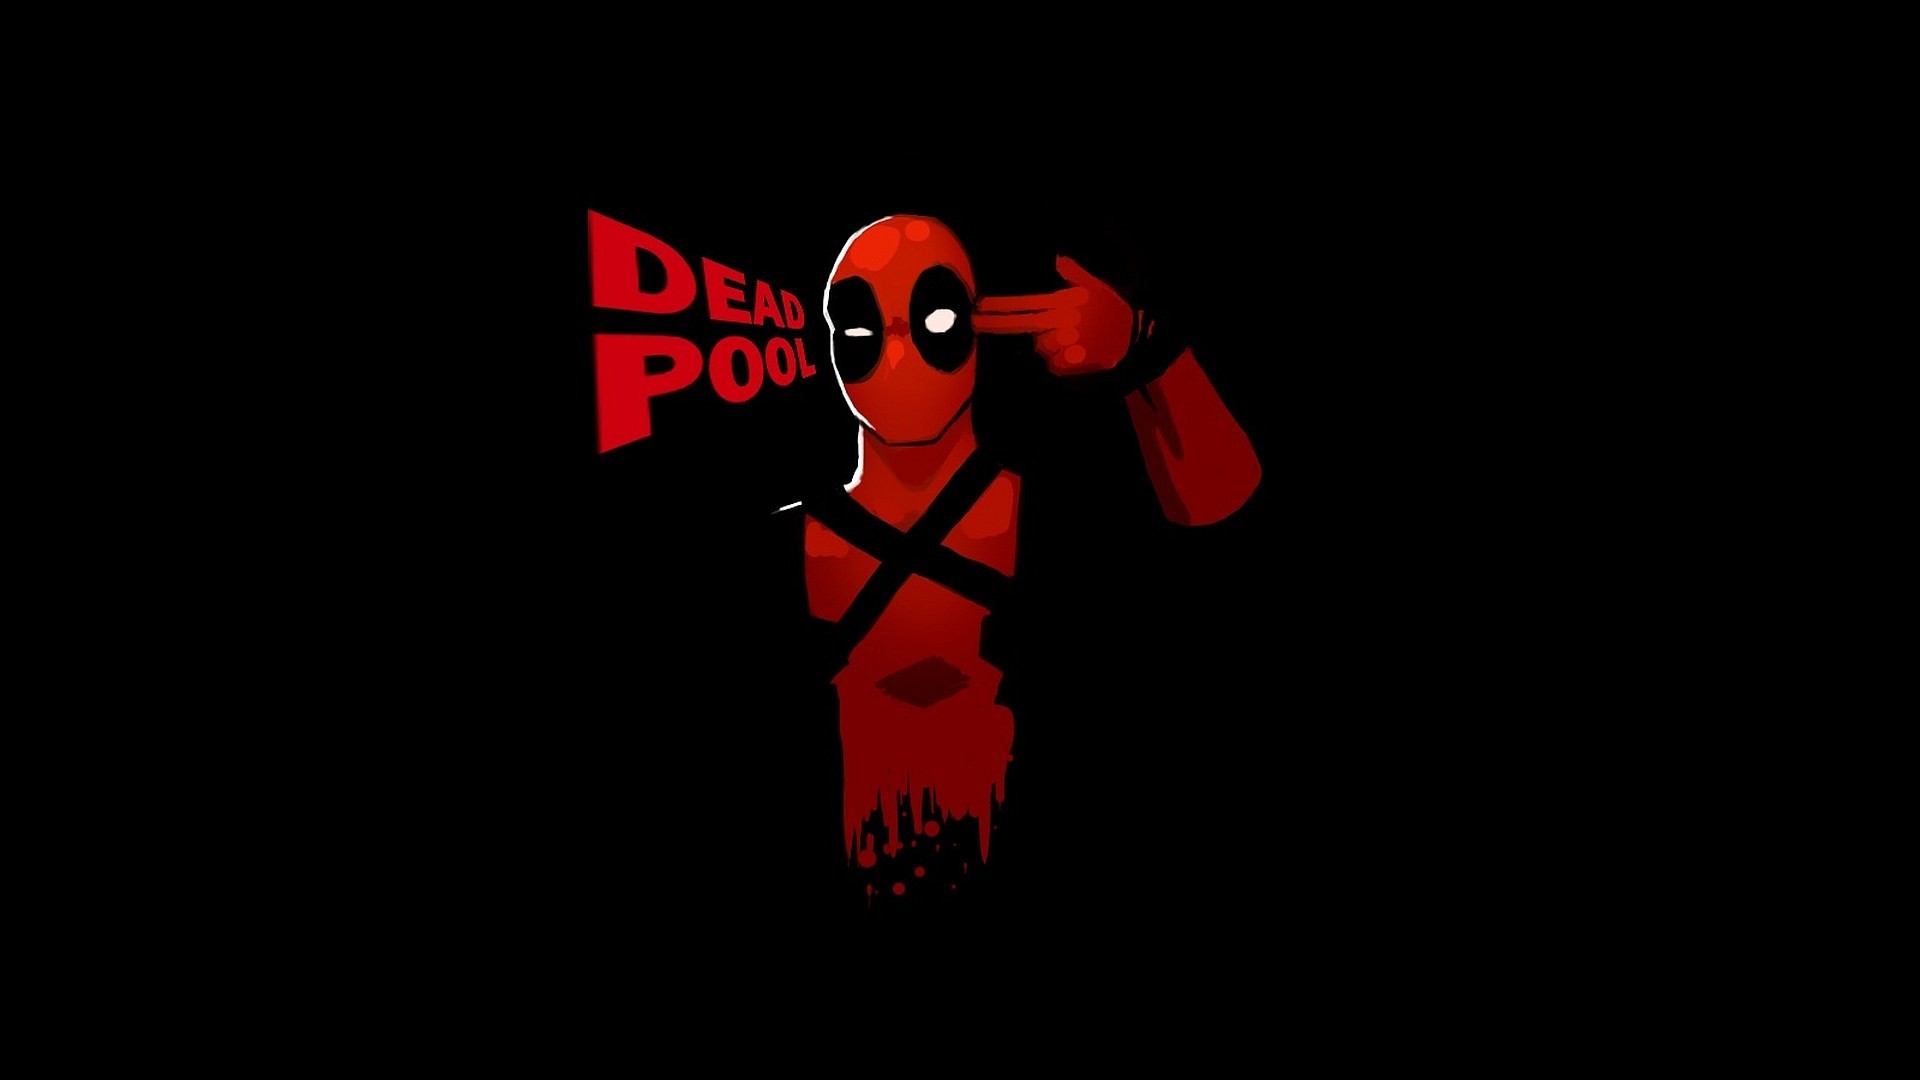 Deadpool Wallpaper Hd Free Pixelstalk Net